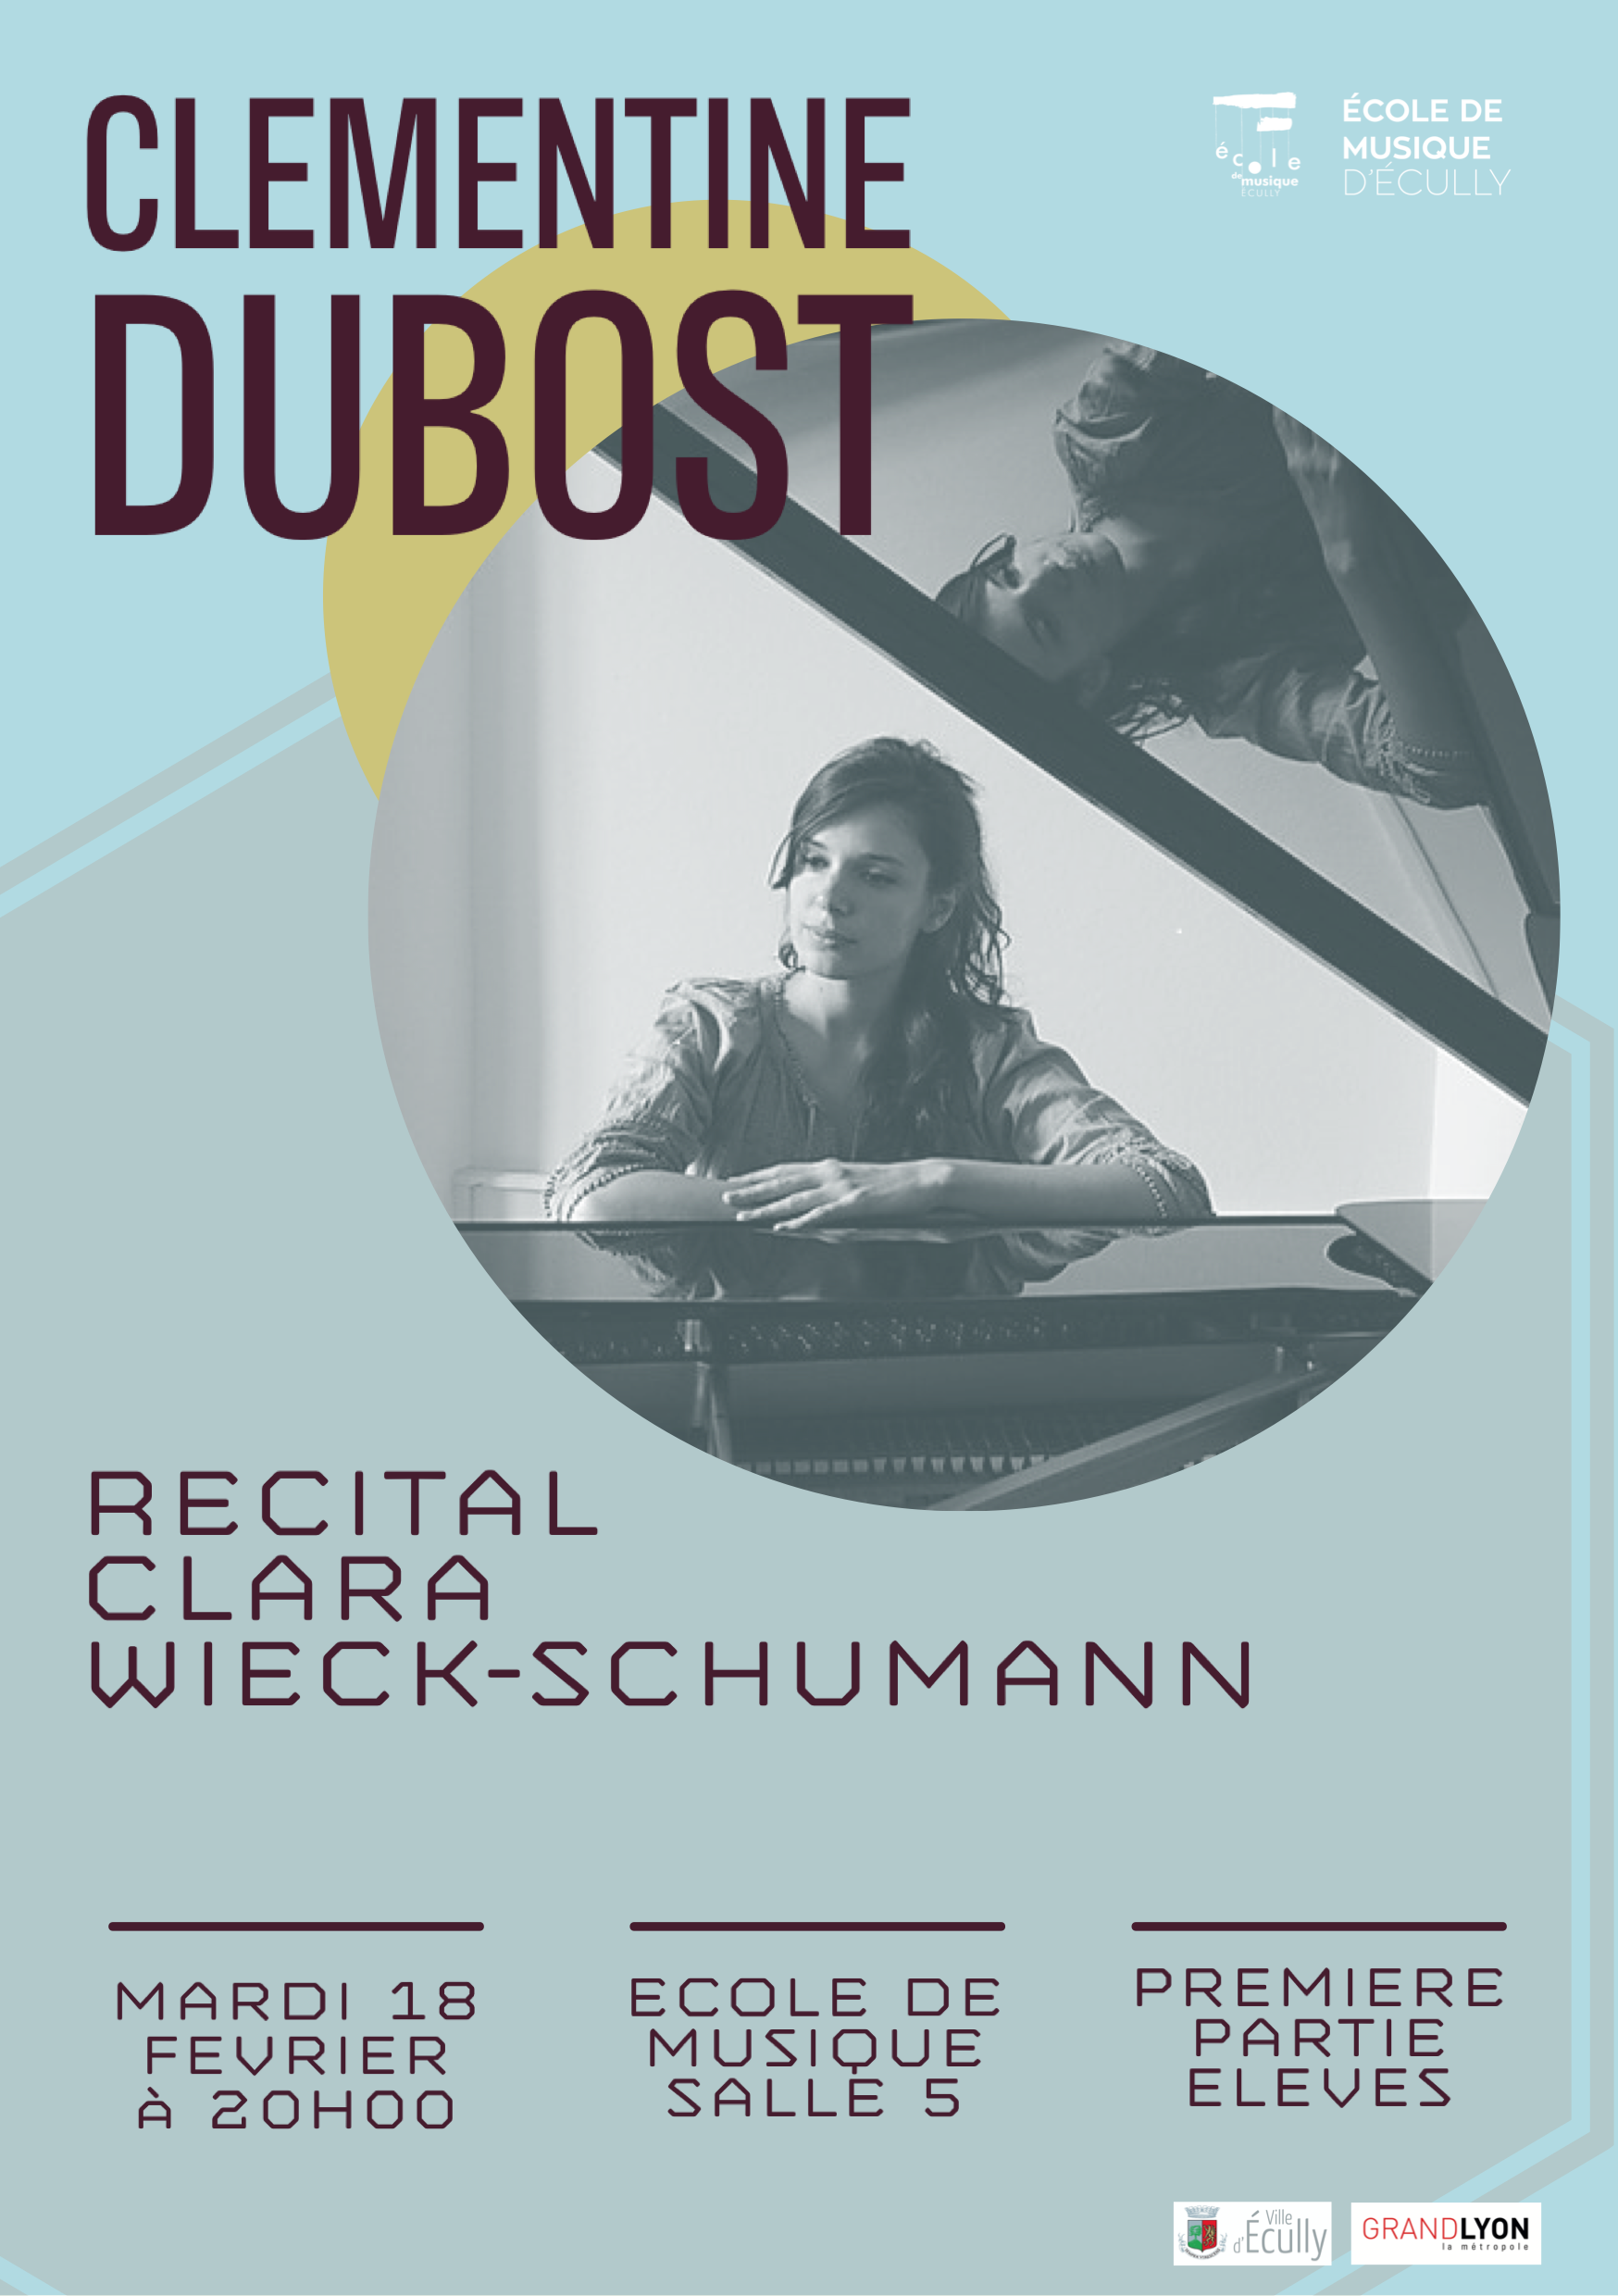 Recital de piano Clara WIECK-SCHUMANN par Clementine Dubost le mardi 18 février à l'école de musique d'Ecully